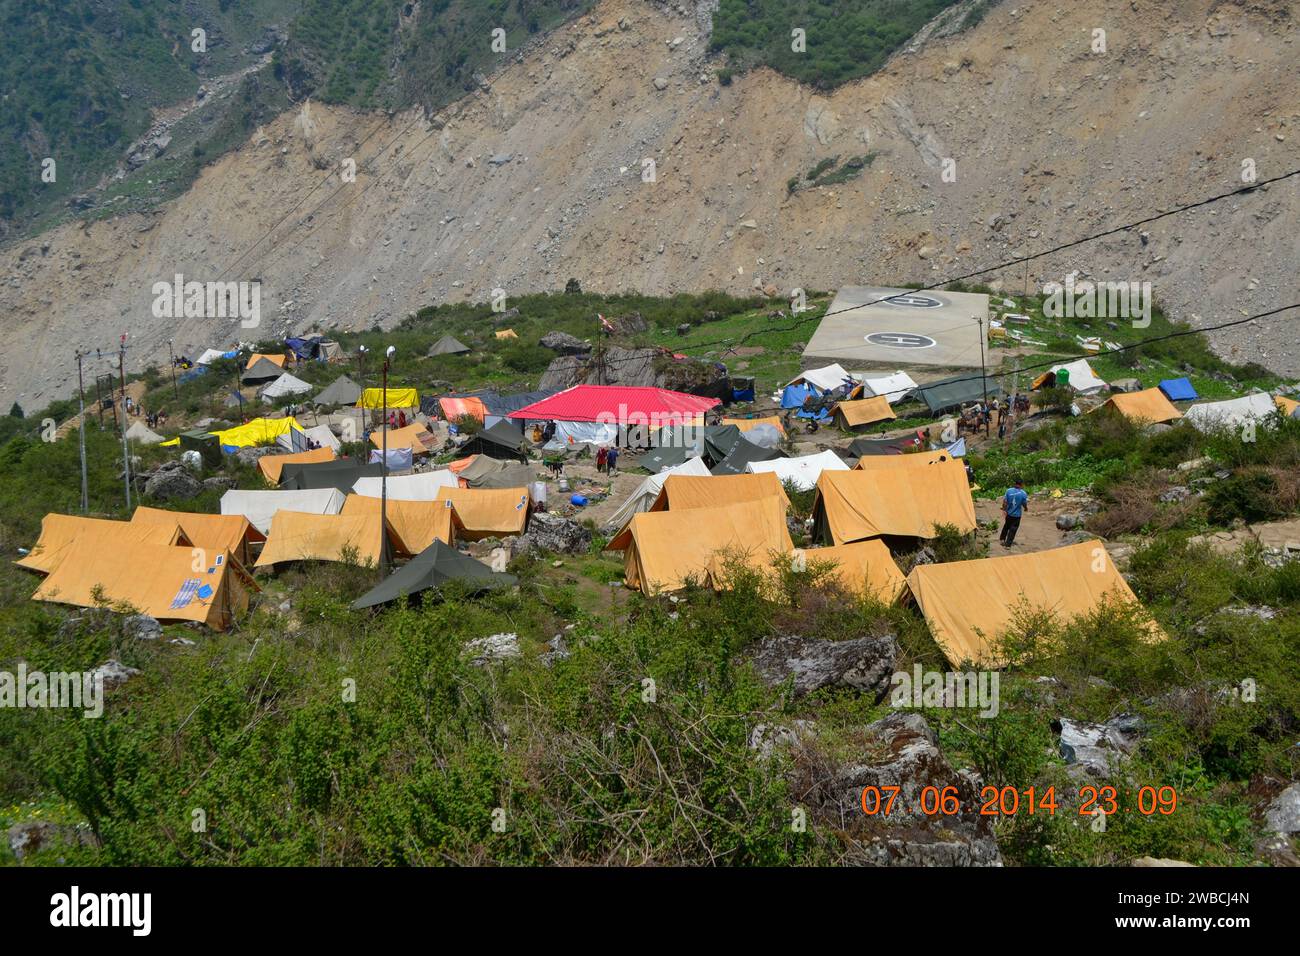 Kedarnath base camp established after Kedarnath disaster. In June 2013, a multi-day cloudburst centered on the North Indian state of Uttarakhand caused devastating floods and landslides. Stock Photo